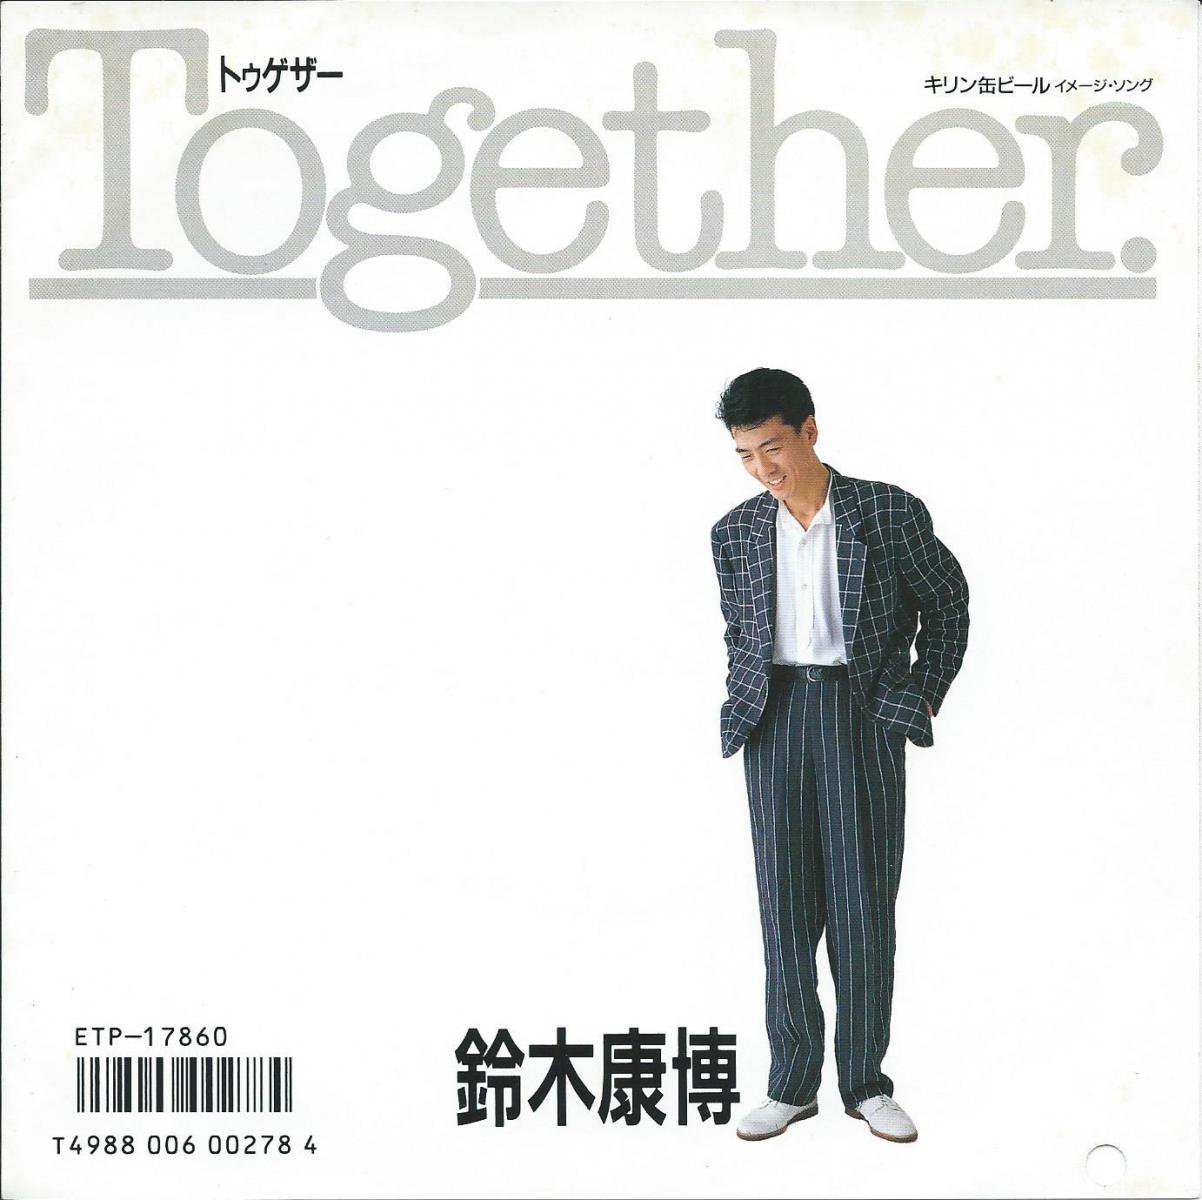 鈴木康博 YASUHIRO SUZUKI / トゥゲザー TOGETHER / エンドレス・サマー ENDLESS SUMMER (7) - HIP  TANK RECORDS